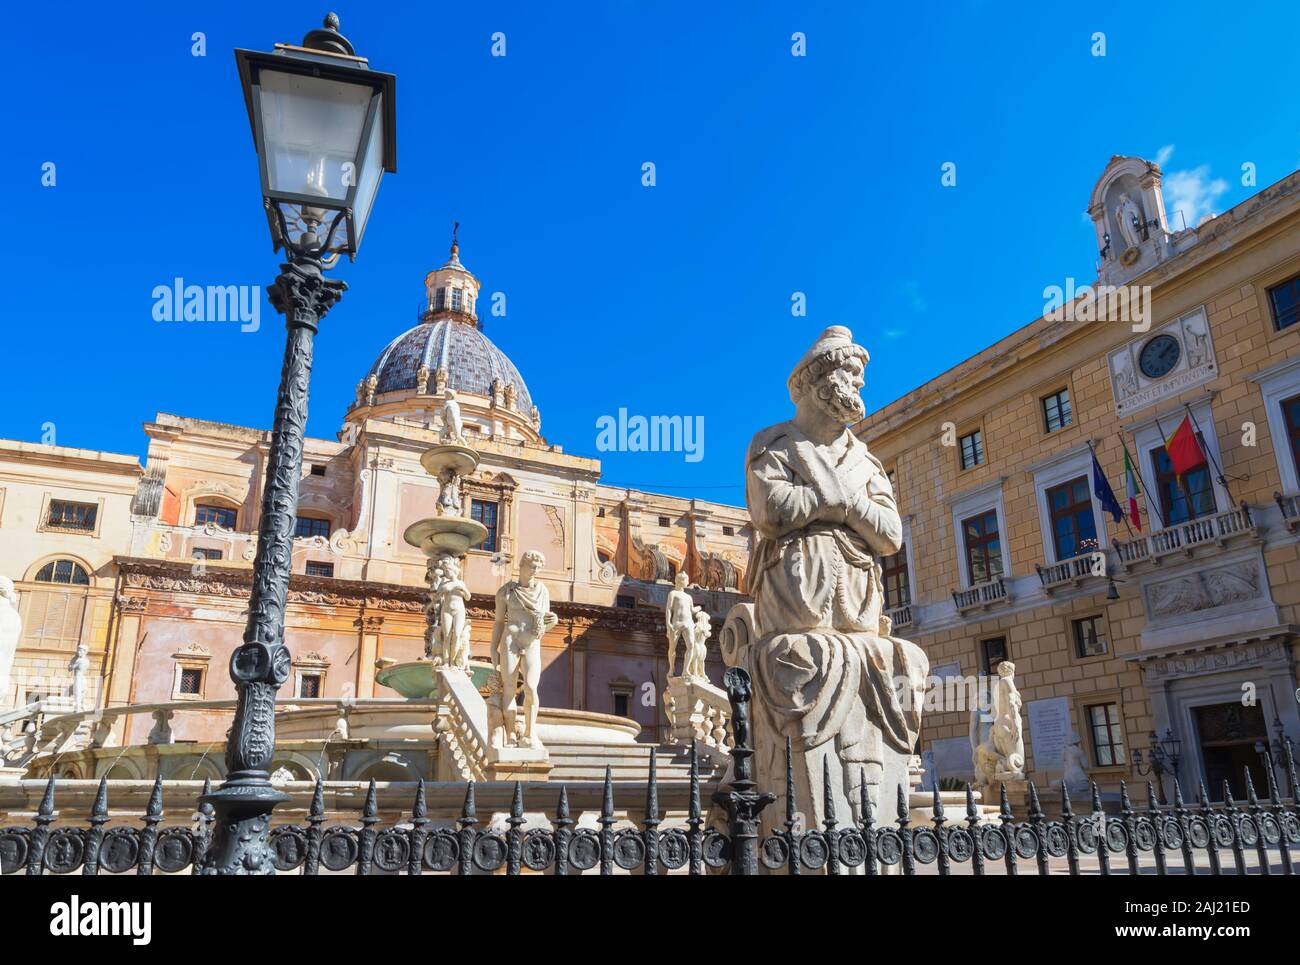 La Piazza Pretoria, Palermo, Sicily, Italy, Europe Banque D'Images